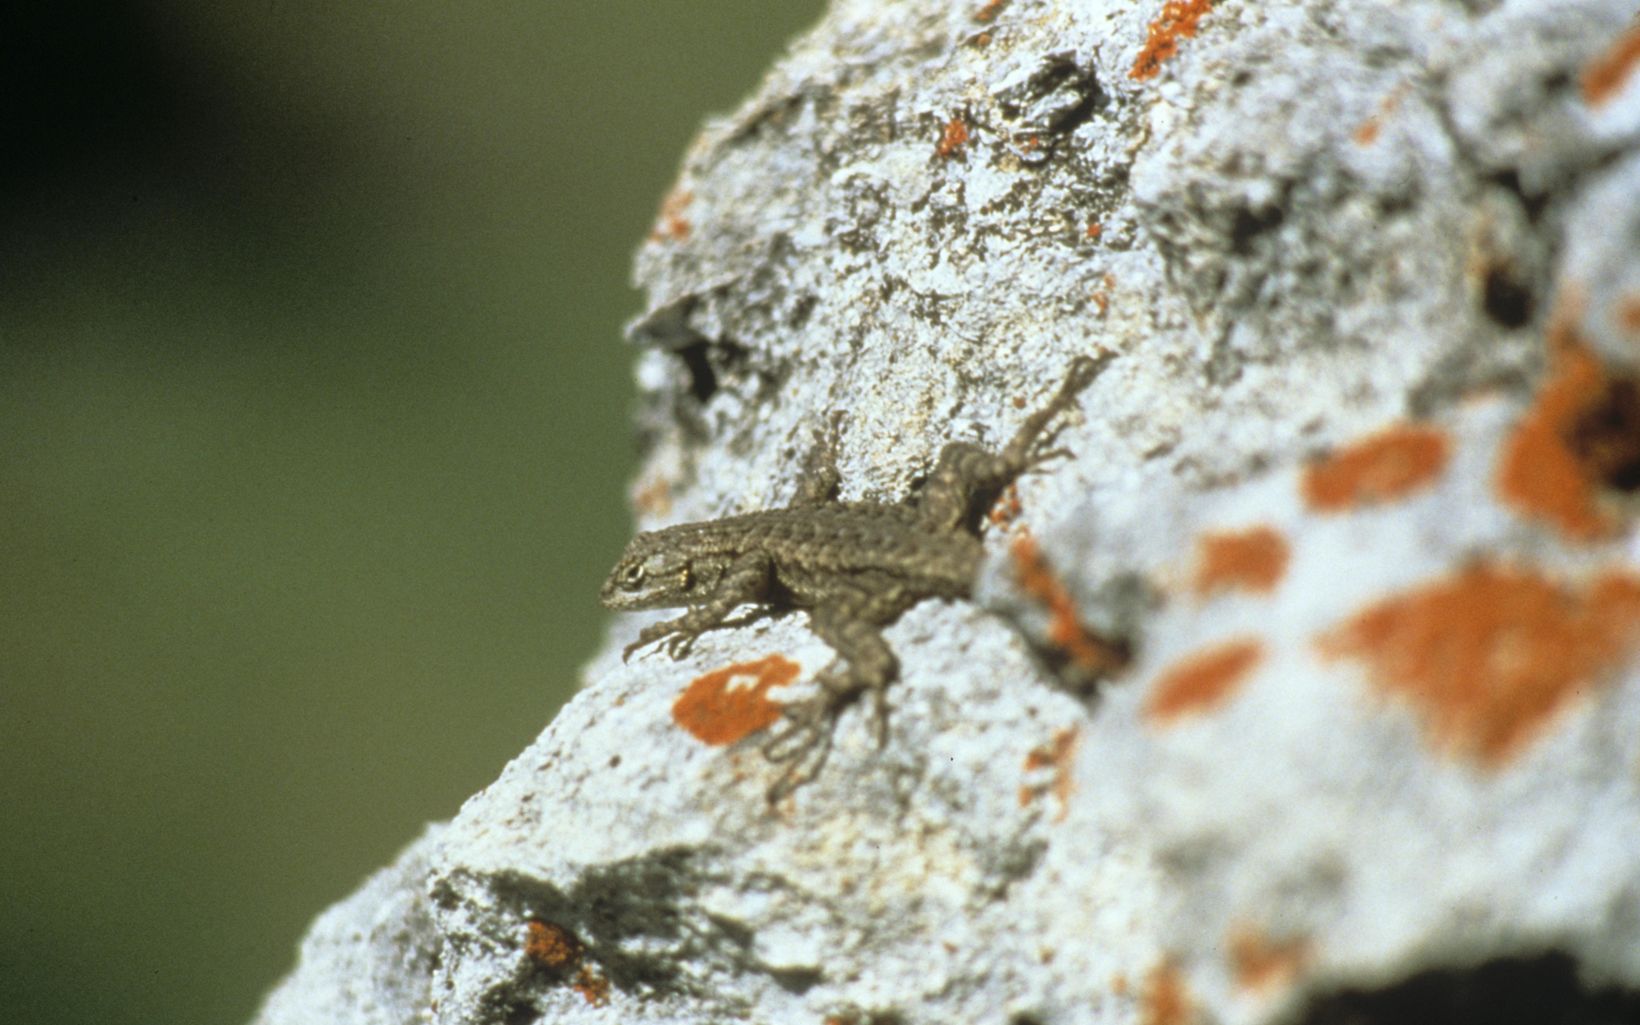 Western Fence Lizard on a rock.